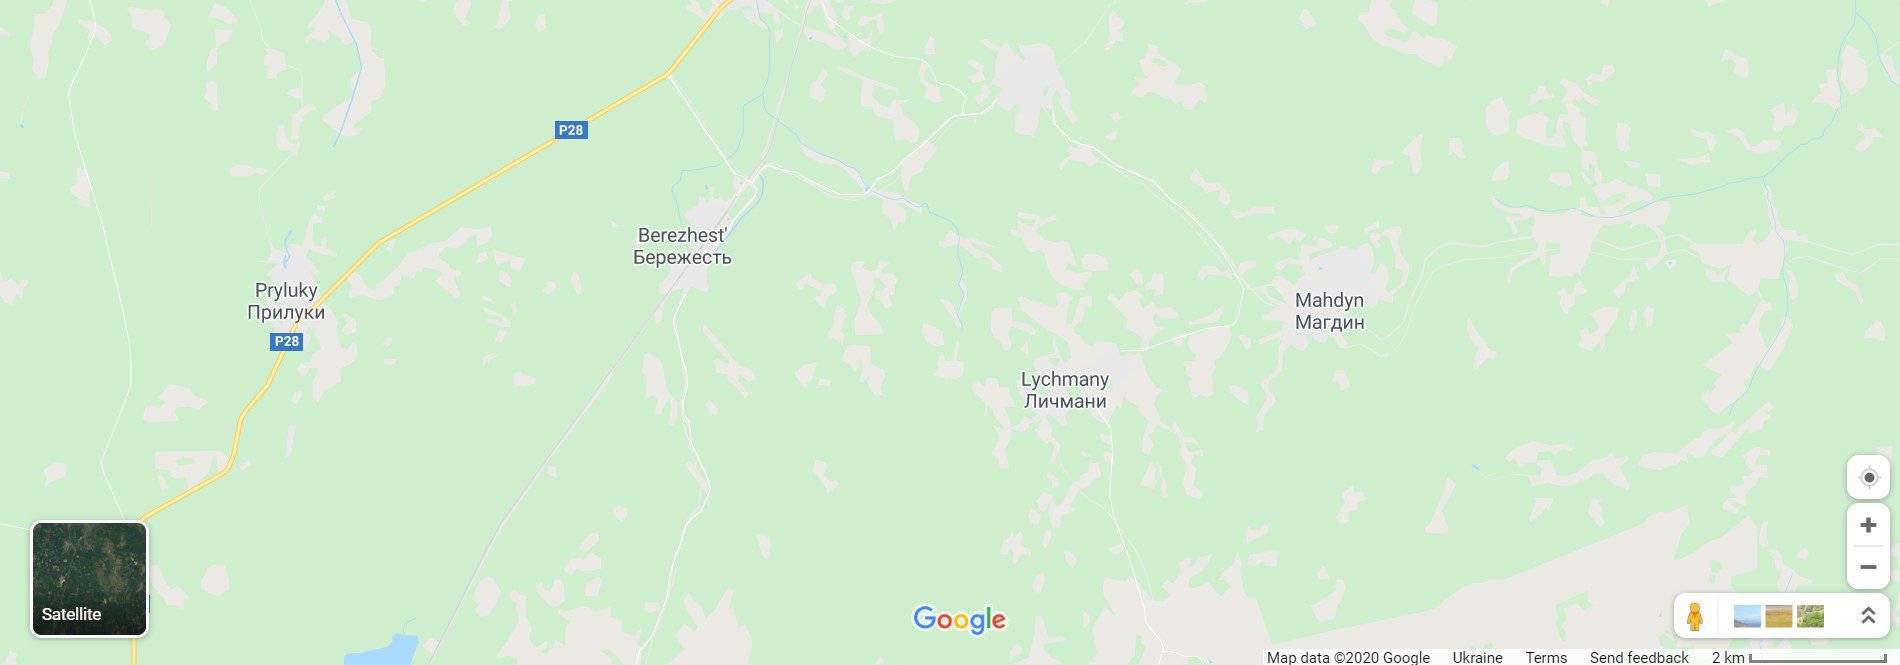 Вигорілі села, показані на відео – на півночі Овруцького району